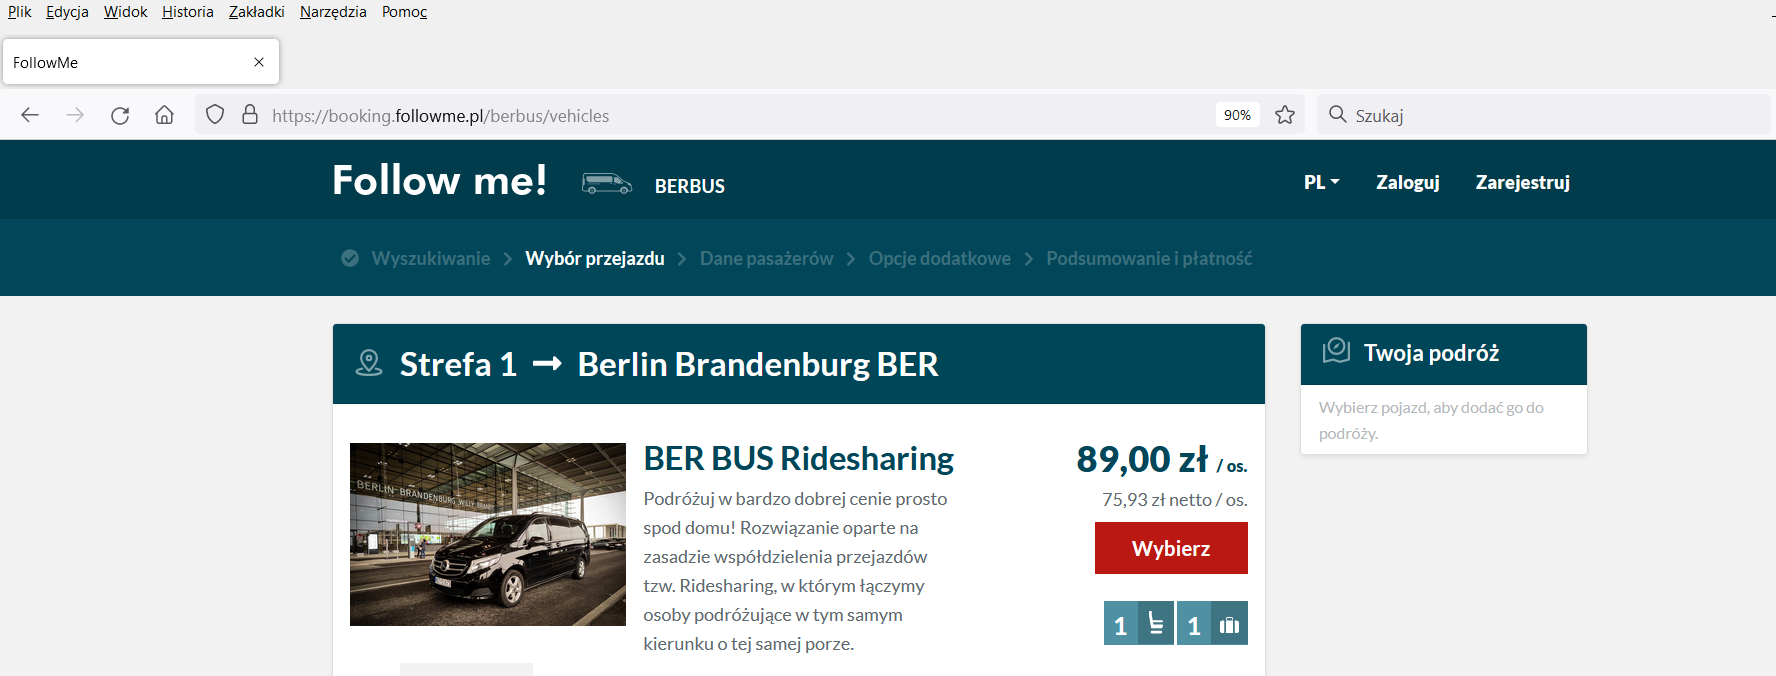 Jak zamówić BERBUS ze Szczecina do Berlina?